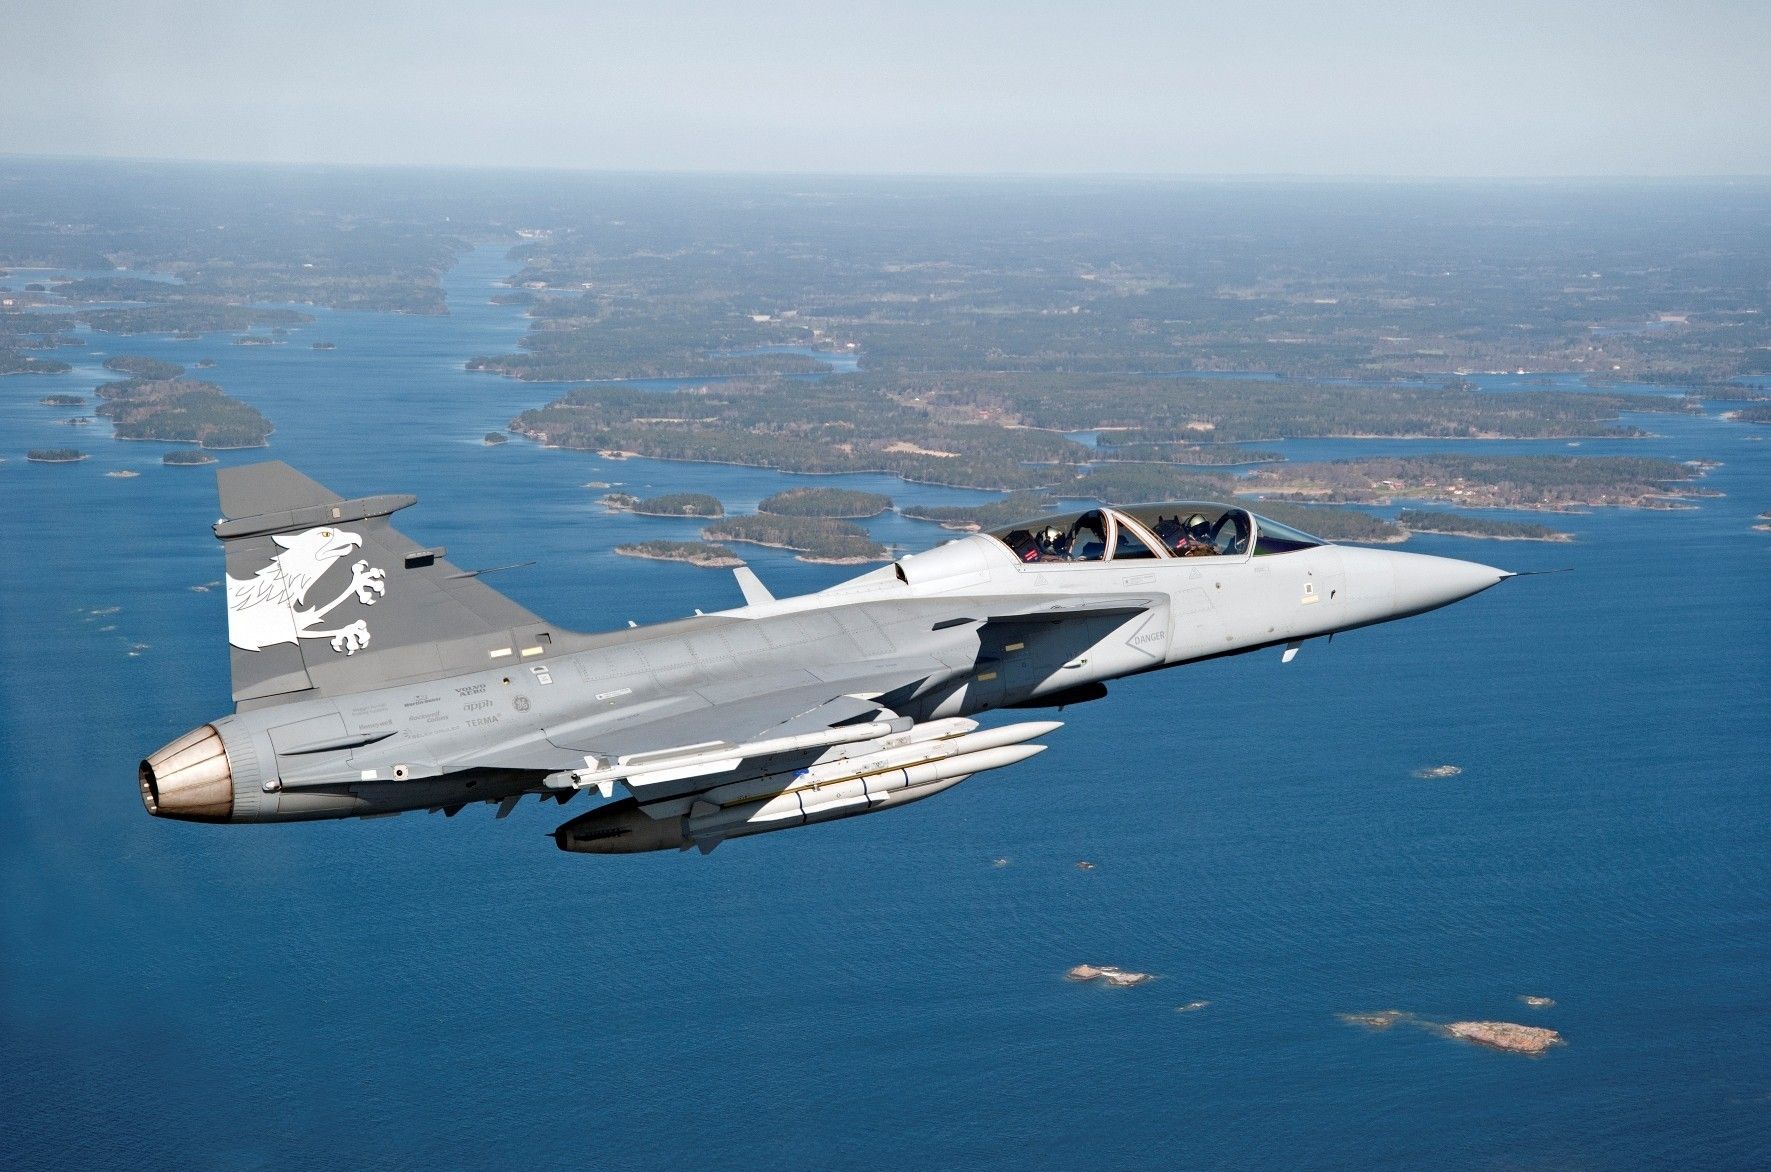 Szwecja najprawdopodobniej sfinalizuje zakup samolotów Gripen nowej generacji, pomimo że Szwajcaria nie będzie brać udziału w pracach rozwojowych. Fot. Stefan Kalm/Saab/gripenblogs.com.